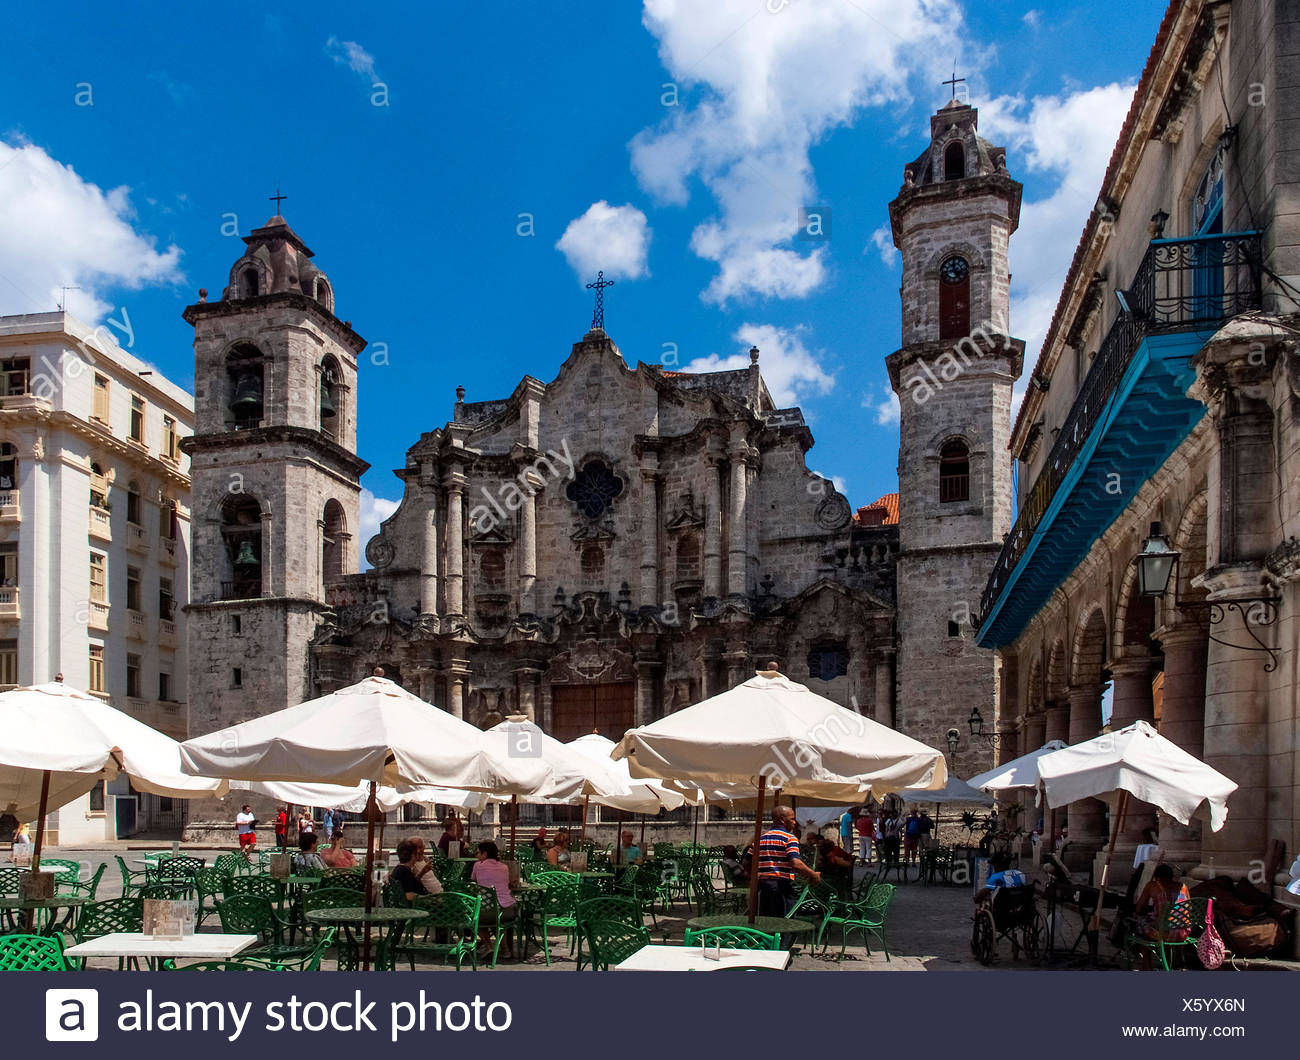 Havanna, Cuba : Plaza de la Catedral Stock Photo - Alamy